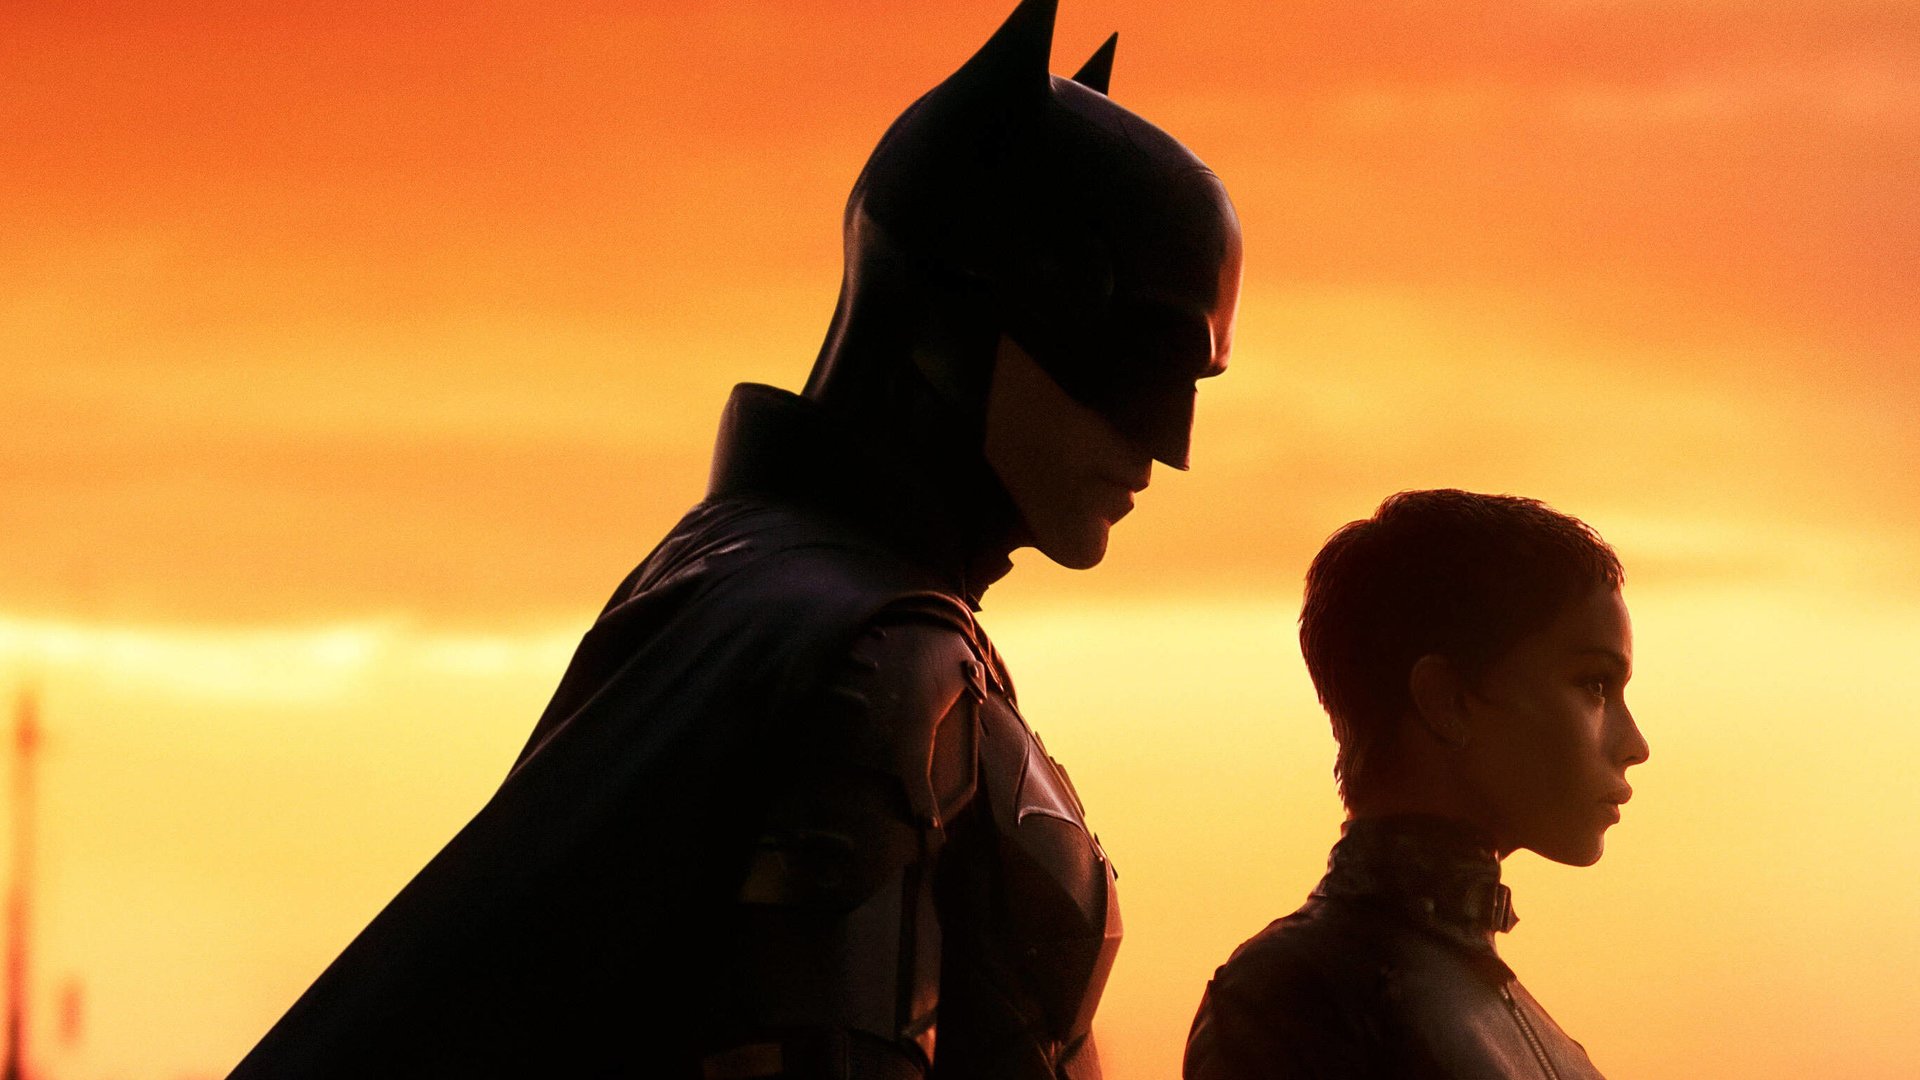 #„The Batman“-Regisseur will rausgeschnittene Szene veröffentlichen